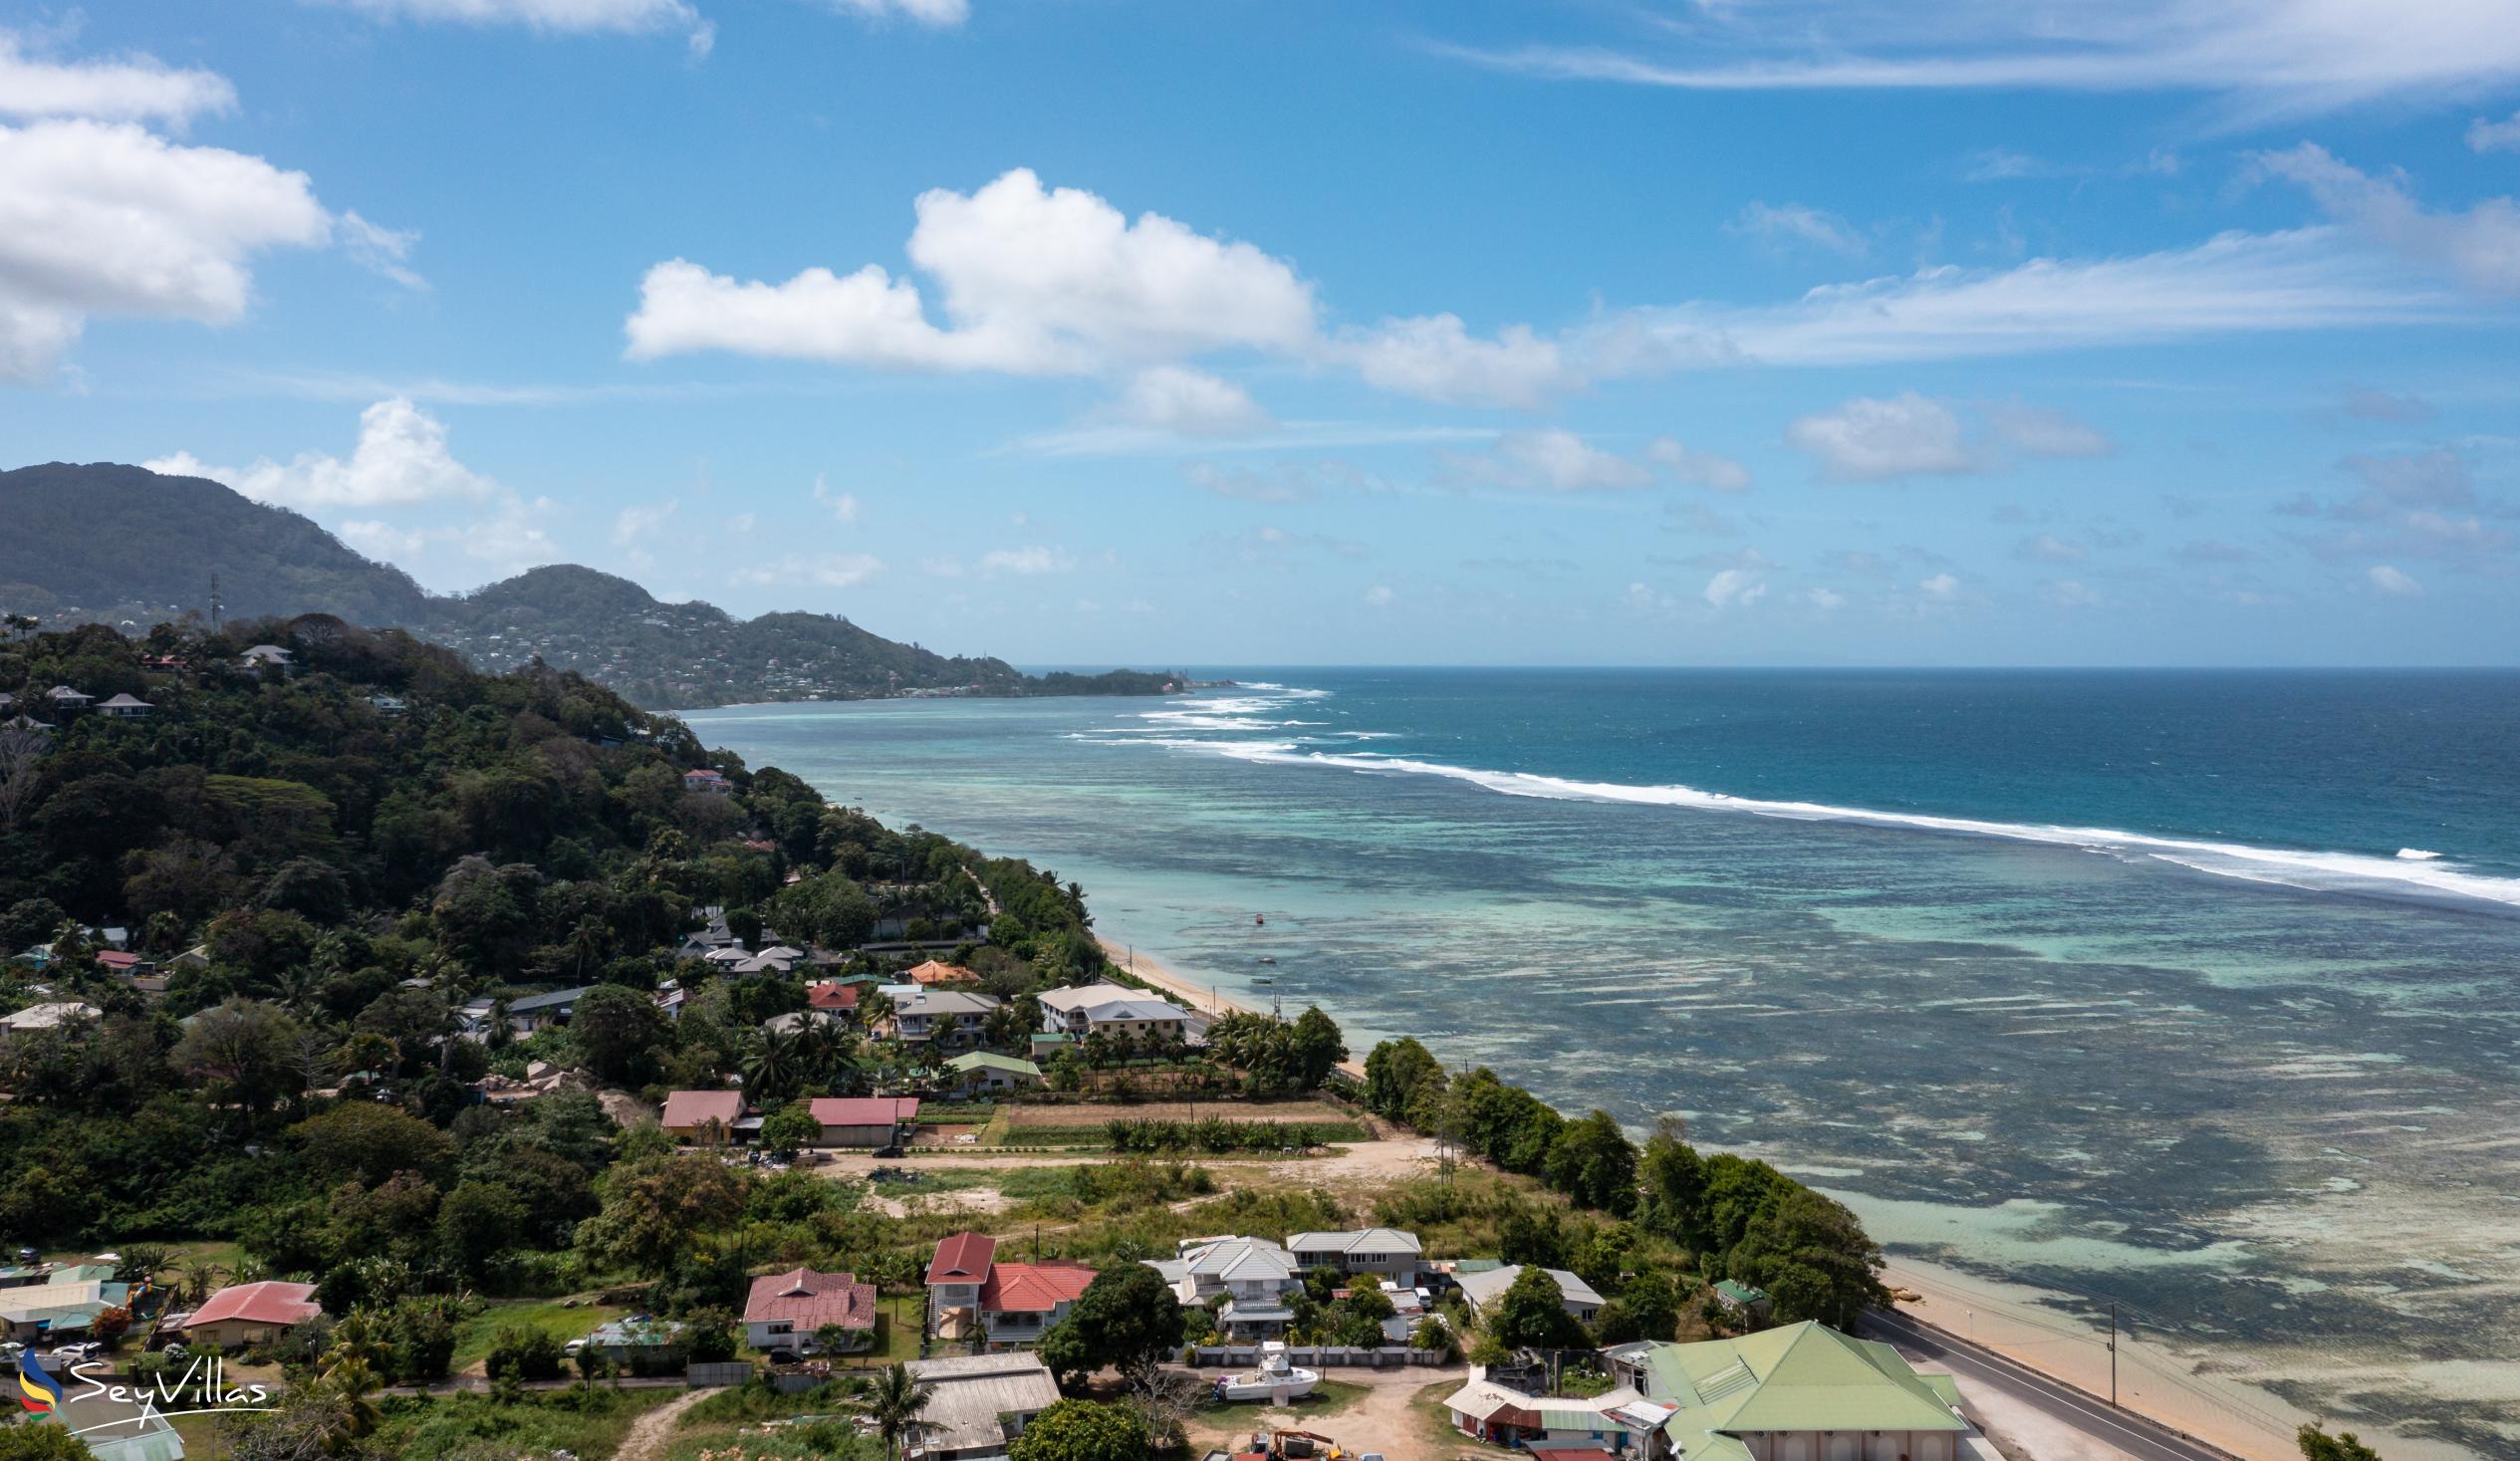 Foto 18: Farida Apartments - Posizione - Mahé (Seychelles)